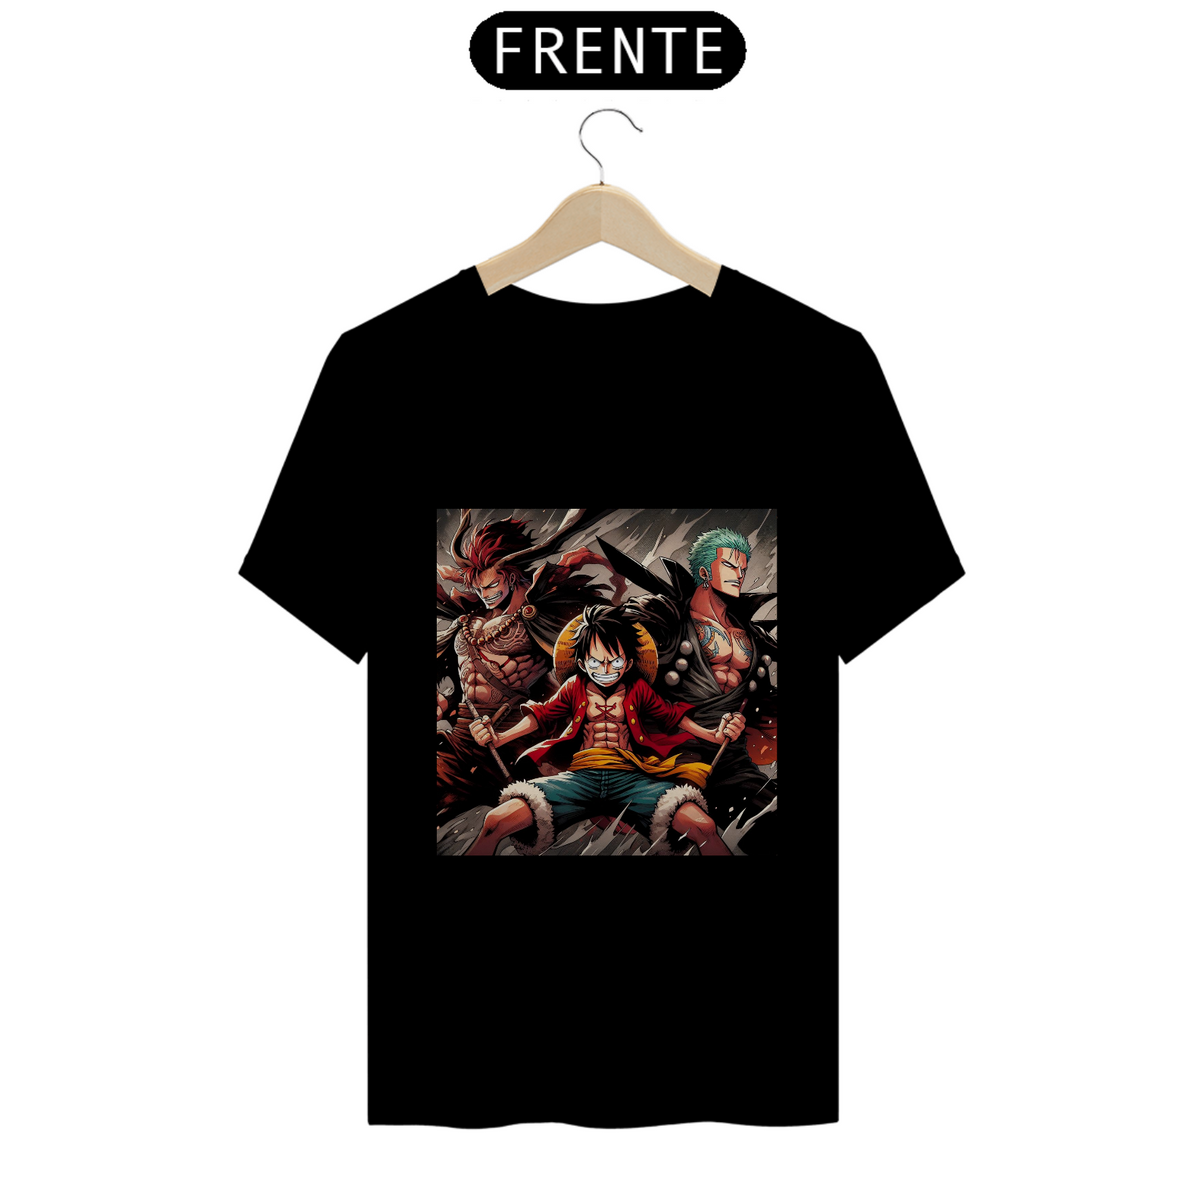 Nome do produto: T-Shirt Luffy, Zoro e Shanks (One Piece)